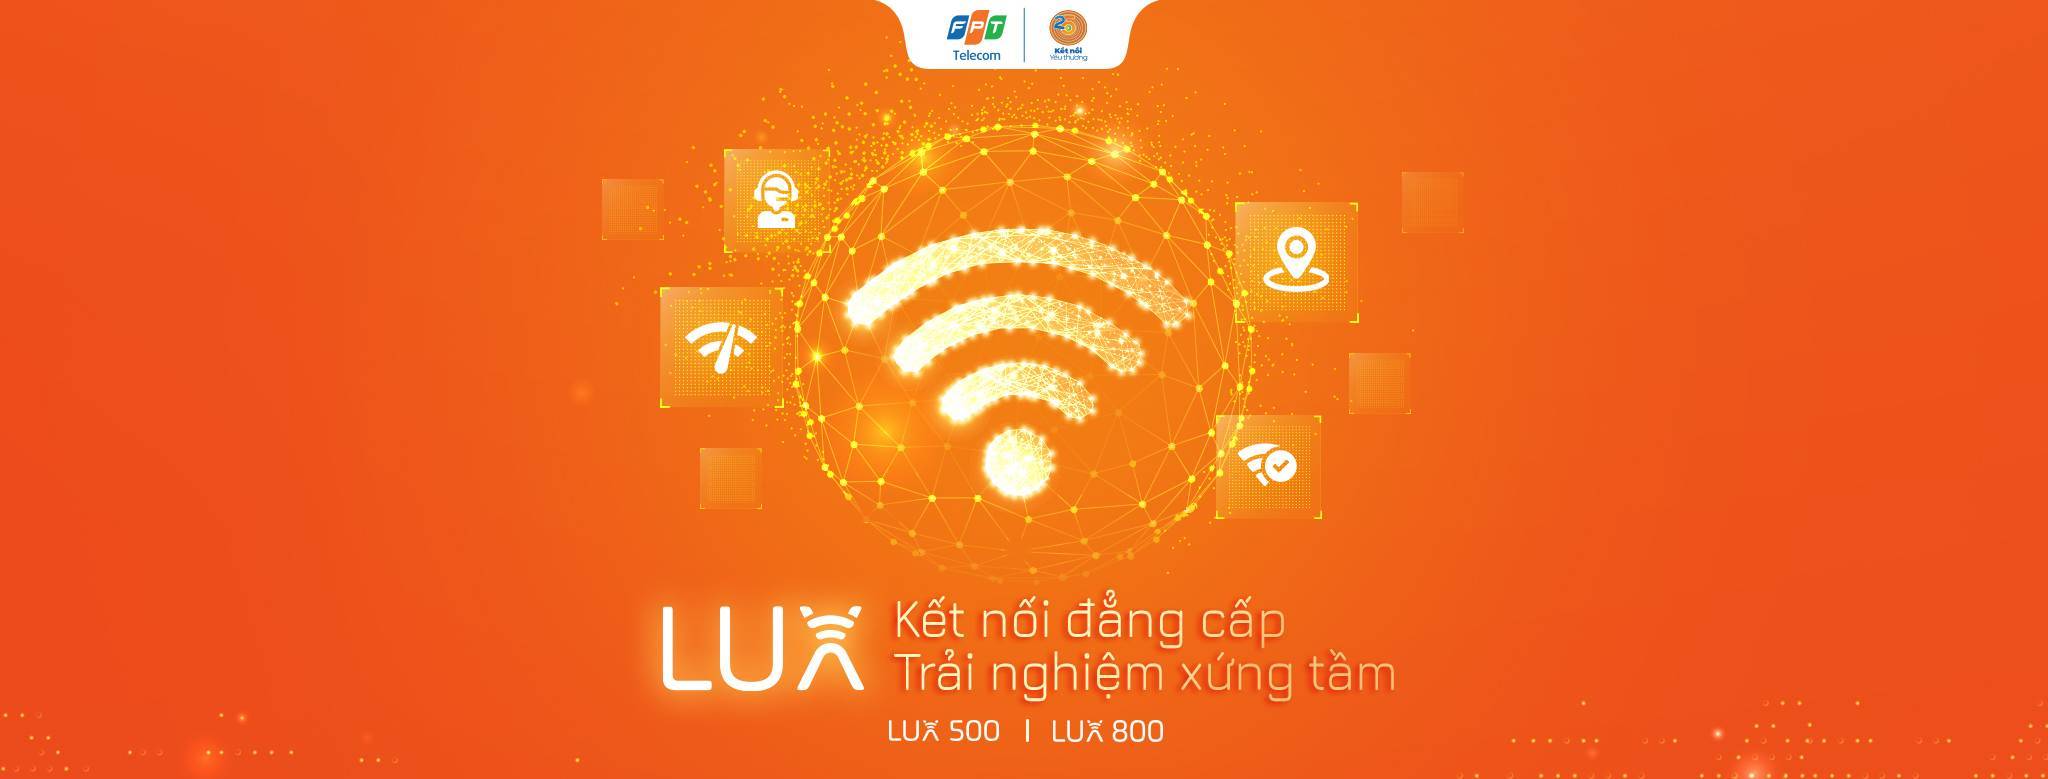 lux-wifi